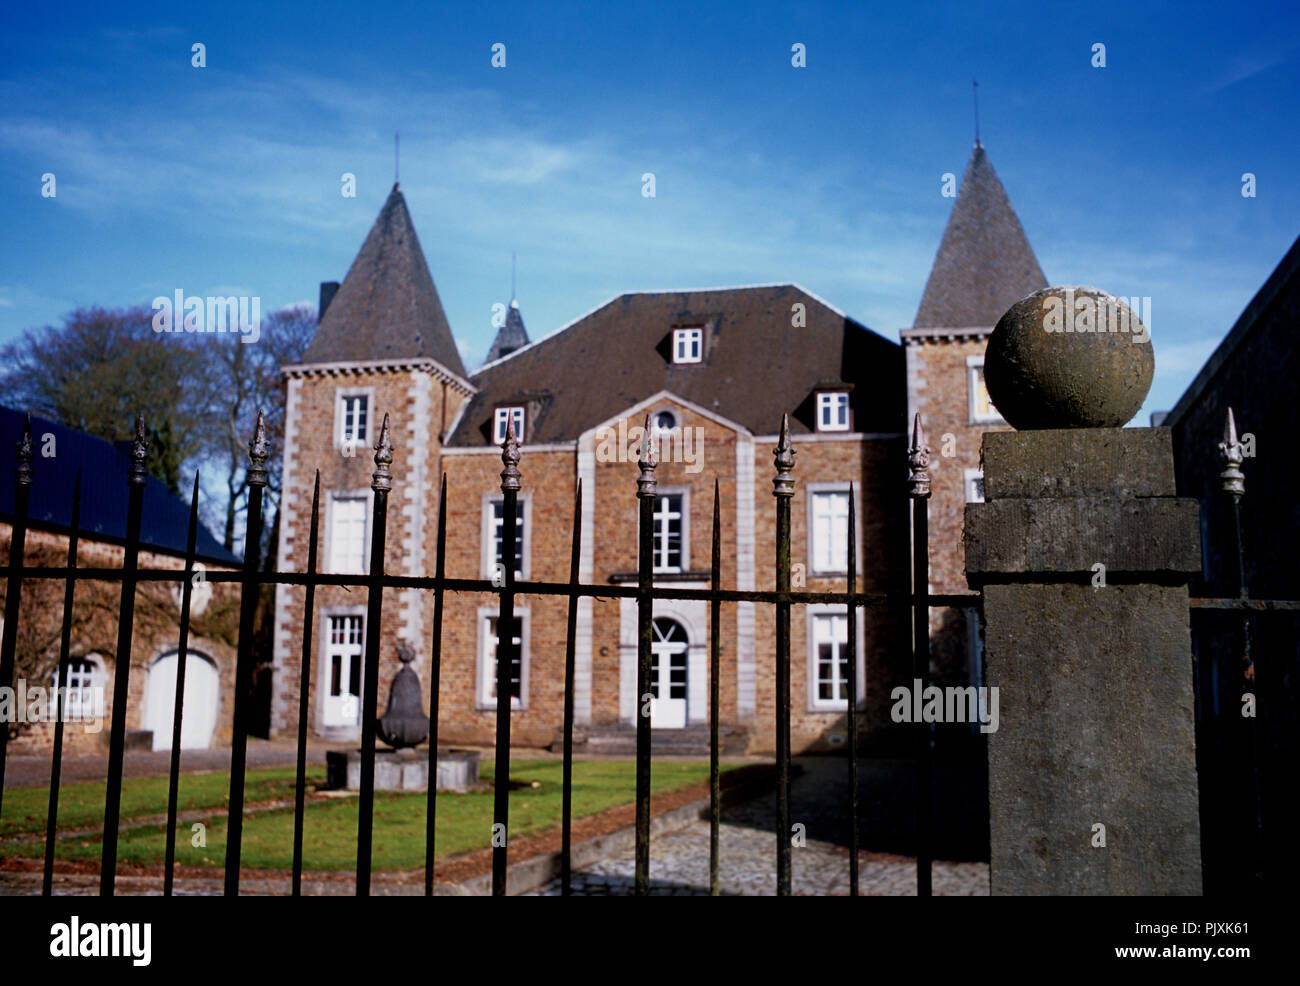 The Château de Champignac or Château de Skeuvre in Natoye (Belgium, 27/02/2010) Stock Photo